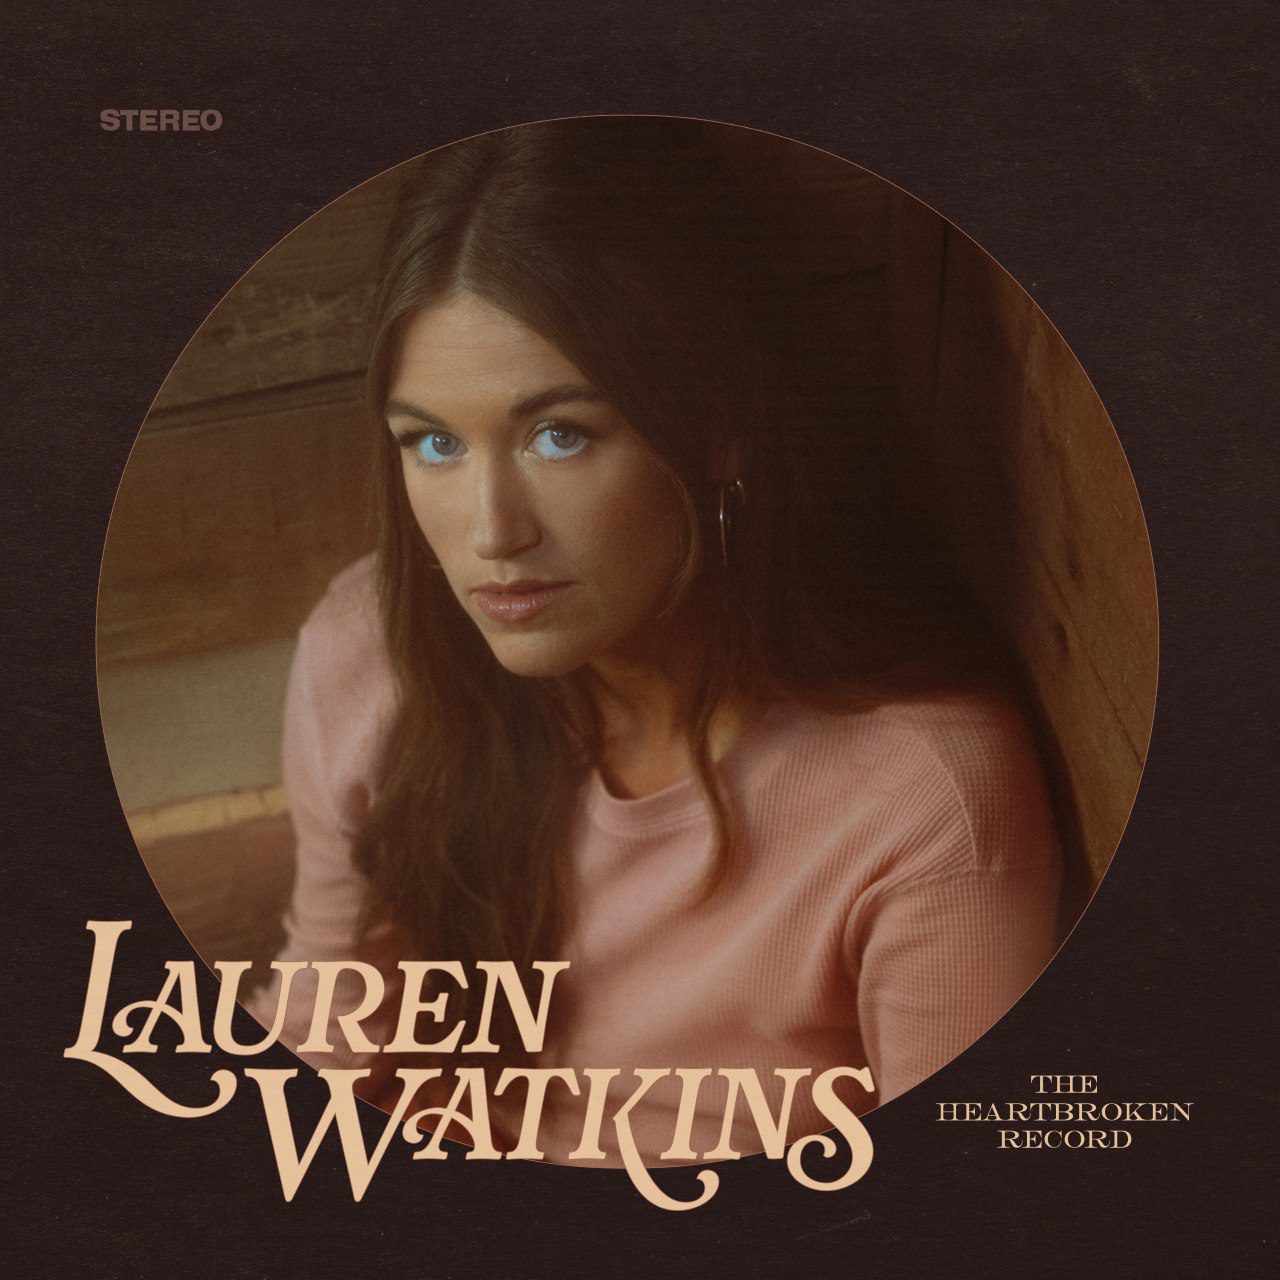 Lauren Watkins - The Heartbroken Record cover album